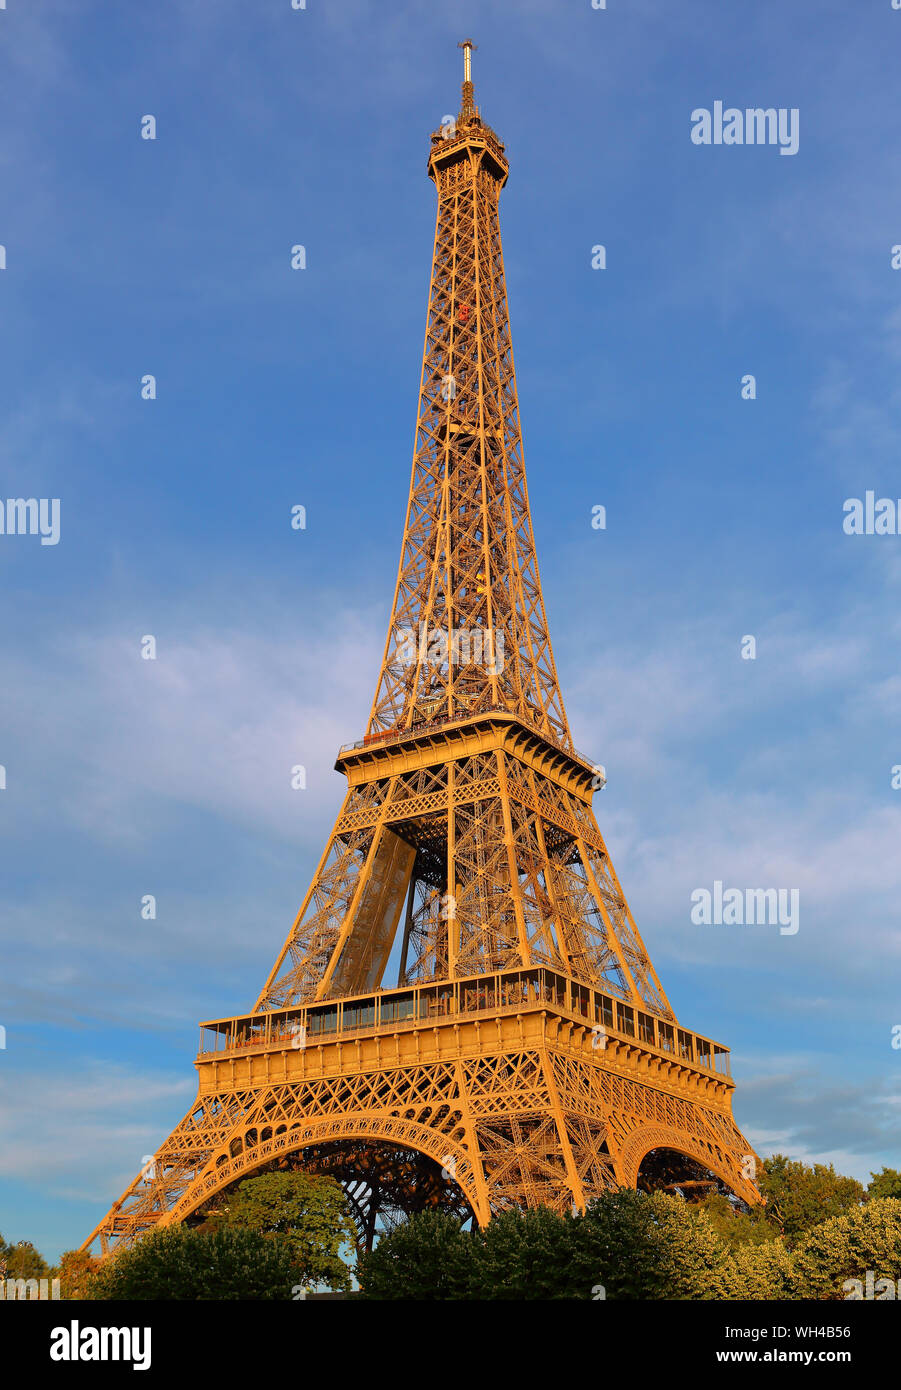 Vue de la Tour Eiffel depuis la Seine couleur Ocre brun Architektur métallique XIXeme siècle étages Tourisme Website ciel bleu soleil Bögen Stockfoto